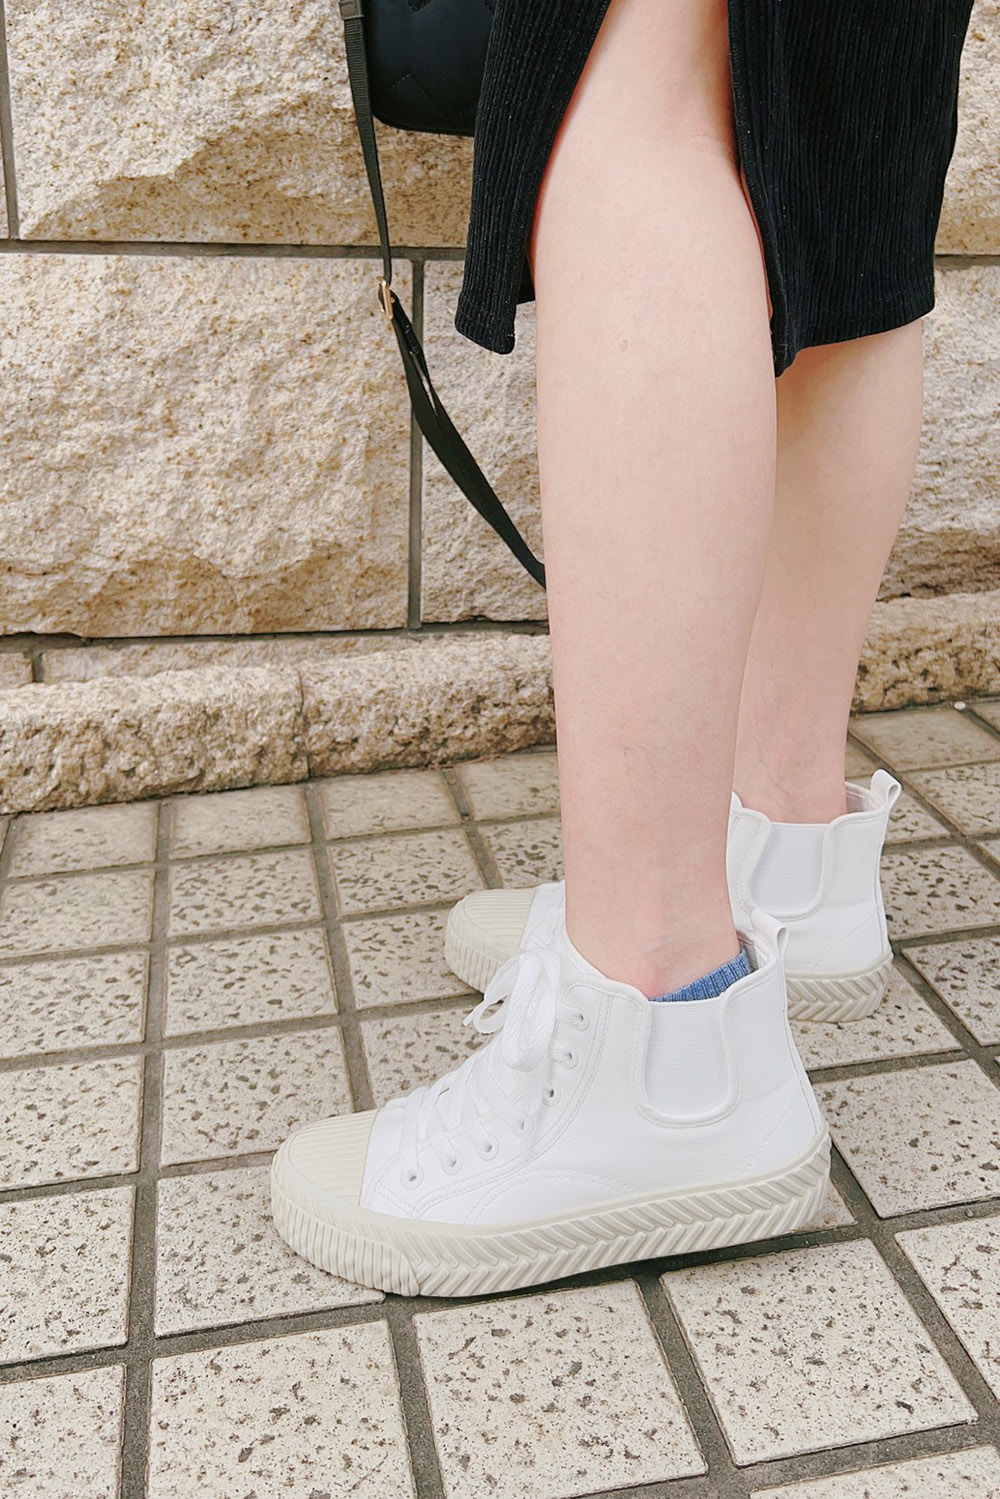 [啾團] 結合舒適好走及修飾於一身的好穿鞋-FM Neu Tral 運動系列